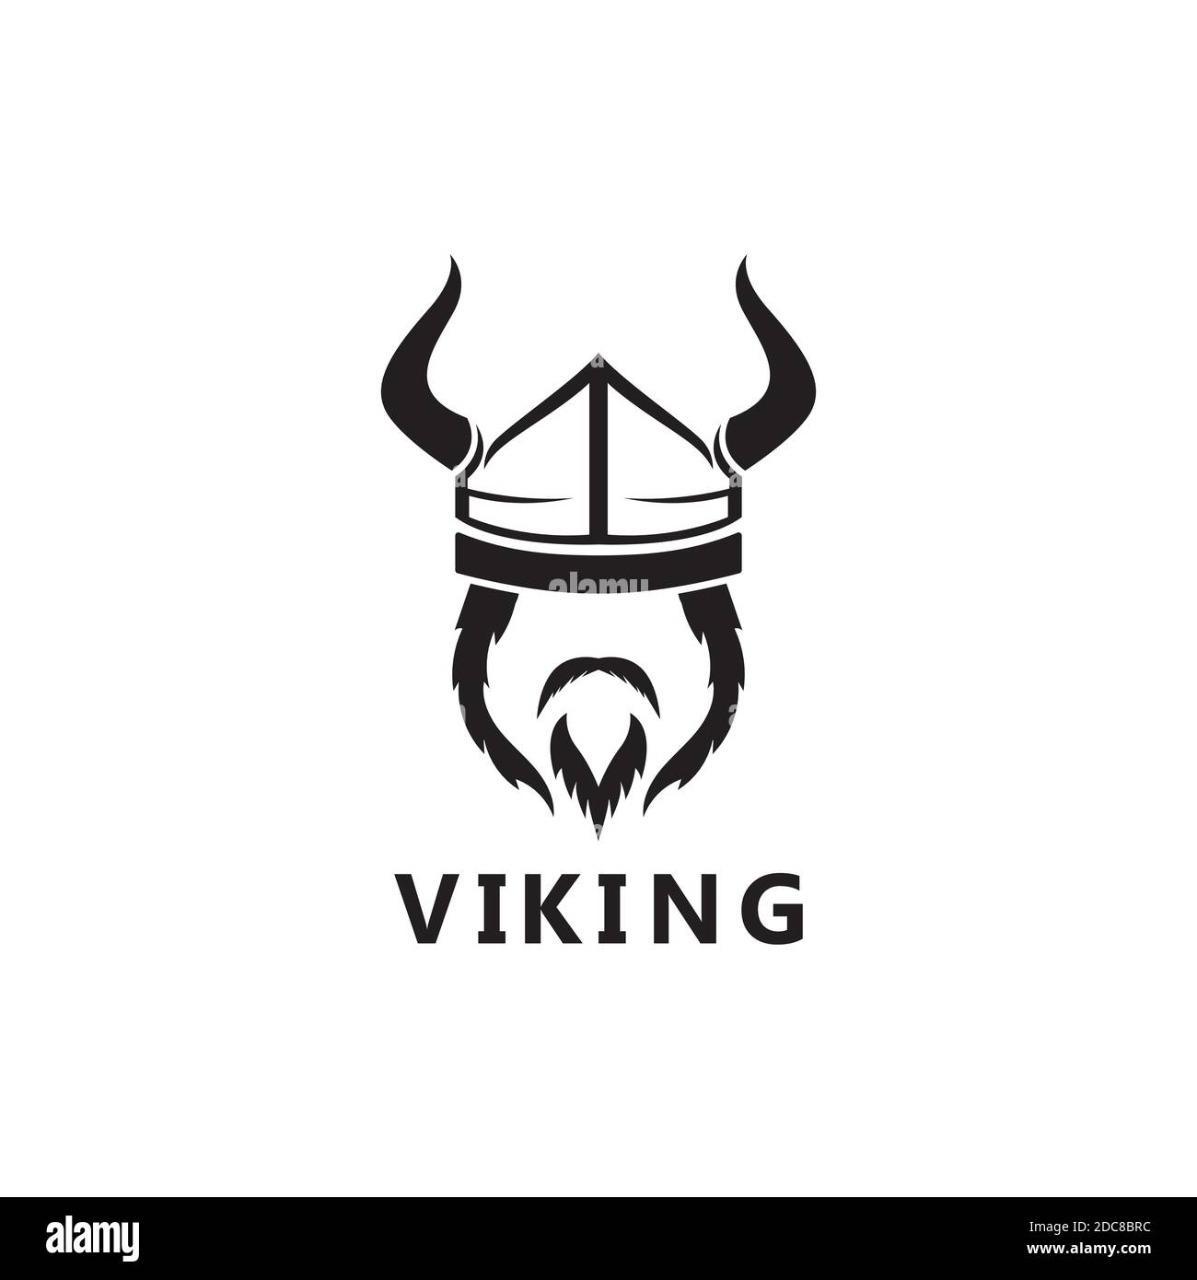 Vikingo95?s=h03qbut35wfkwa0+i6hjhdjsmhhoyjvsqxdjxwextsq=